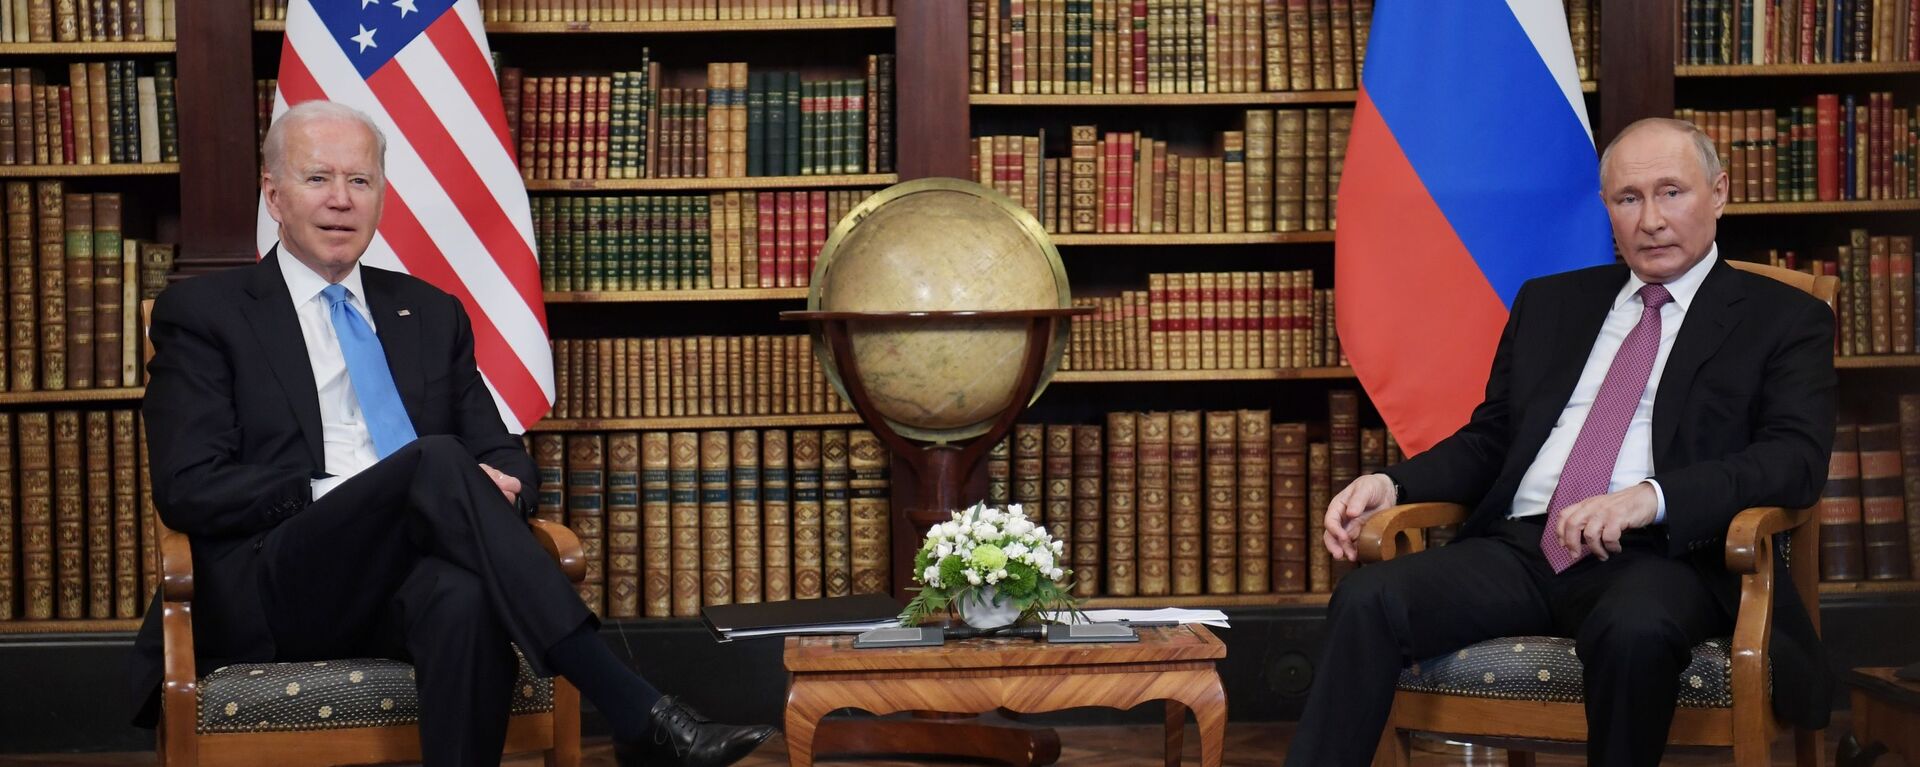 ჯო ბაიდენისა და ვლადიმირ პუტინის შეხვედრა ჟენევაში - Sputnik საქართველო, 1920, 17.06.2021